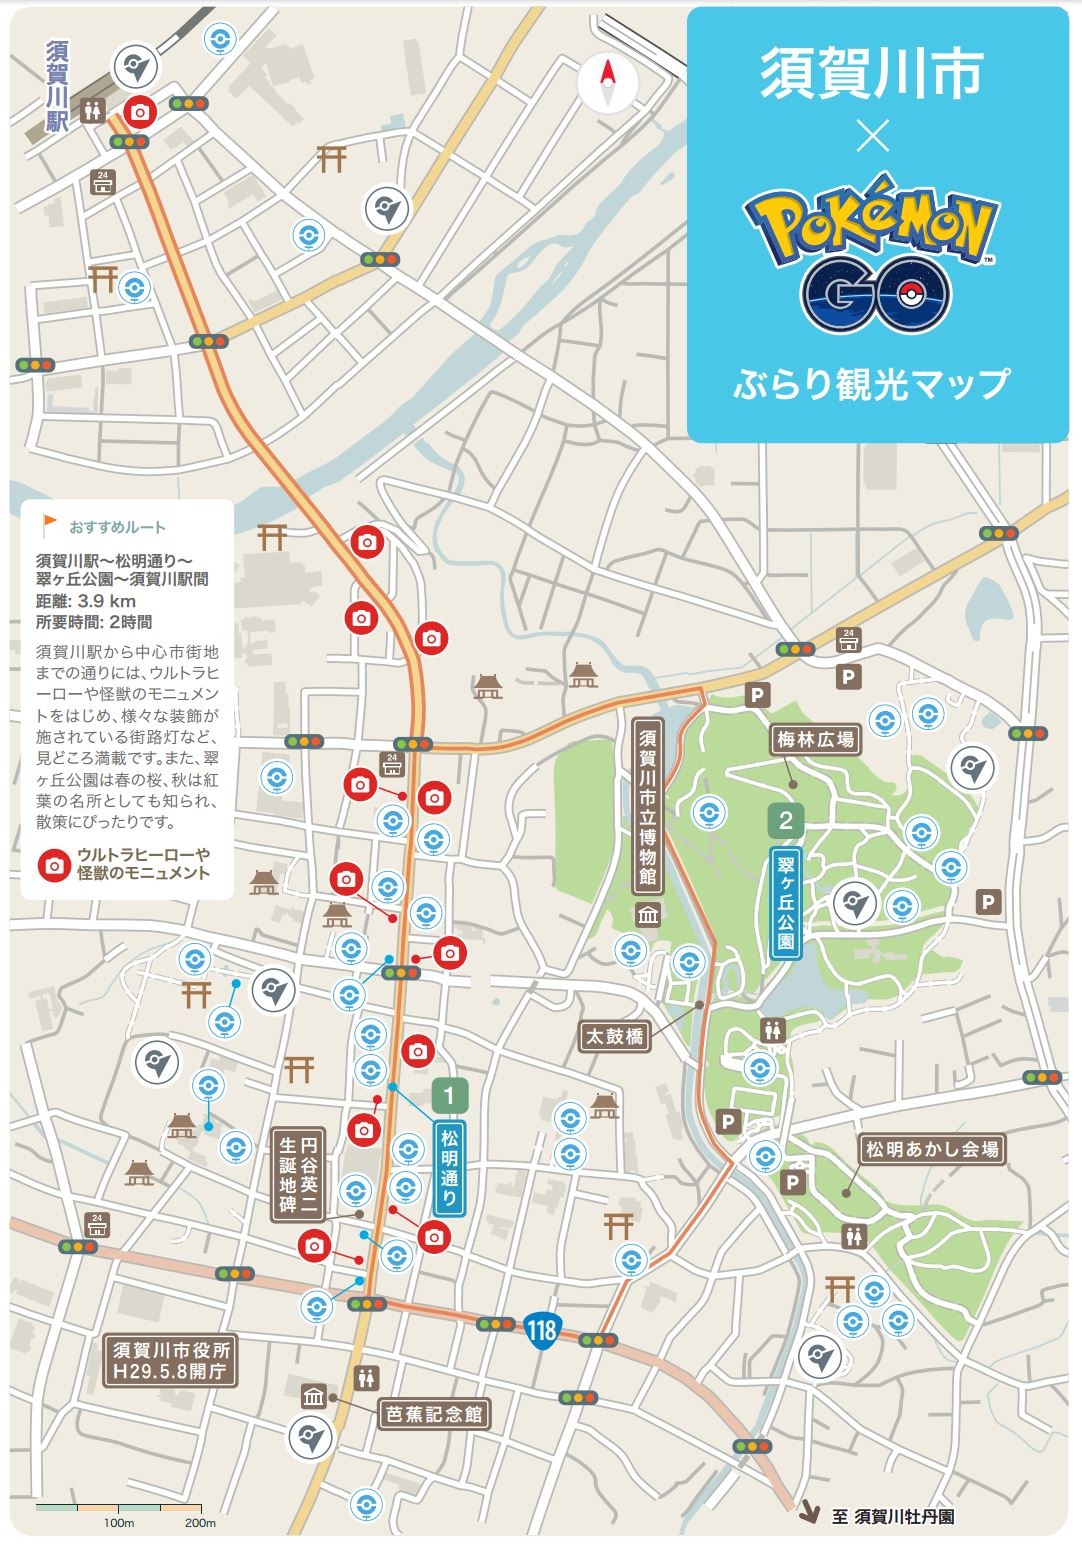 ポケモンgo 公認 ふくしまdeぶらり観光map が公開 賀川市のポケストップ ジムの場所が記載 インサイド